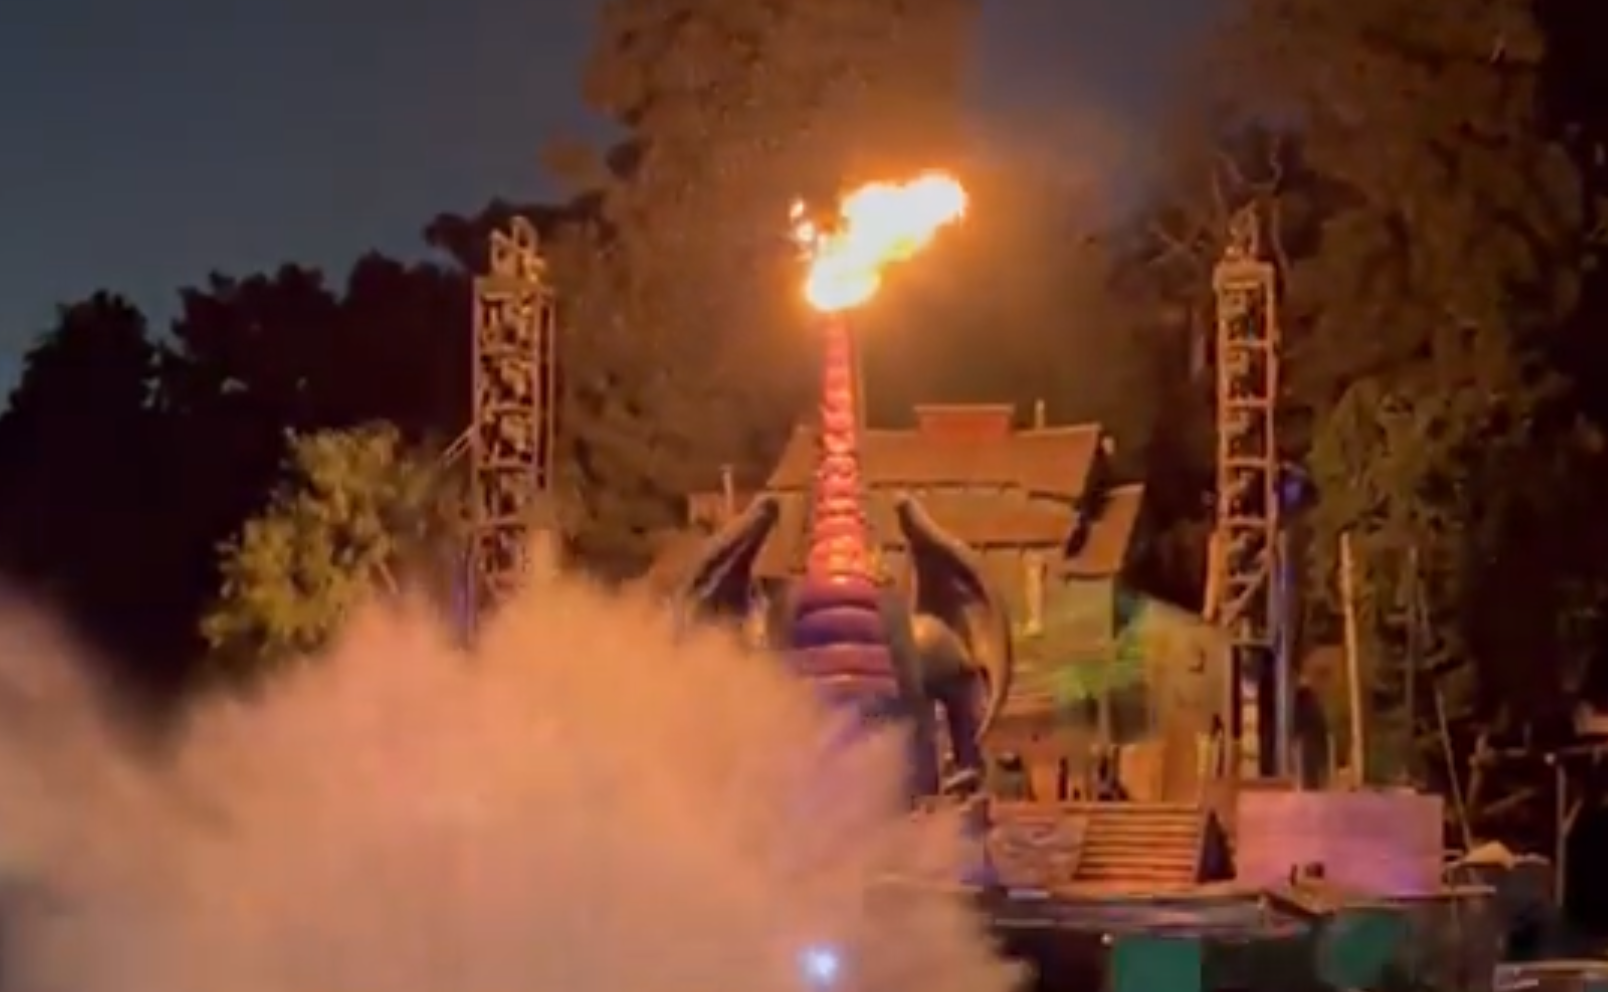 Bei der Live-Show „Fantasmic!“ brannte eine etwa 14 Meter hohe Drachenfigur lichterloh.